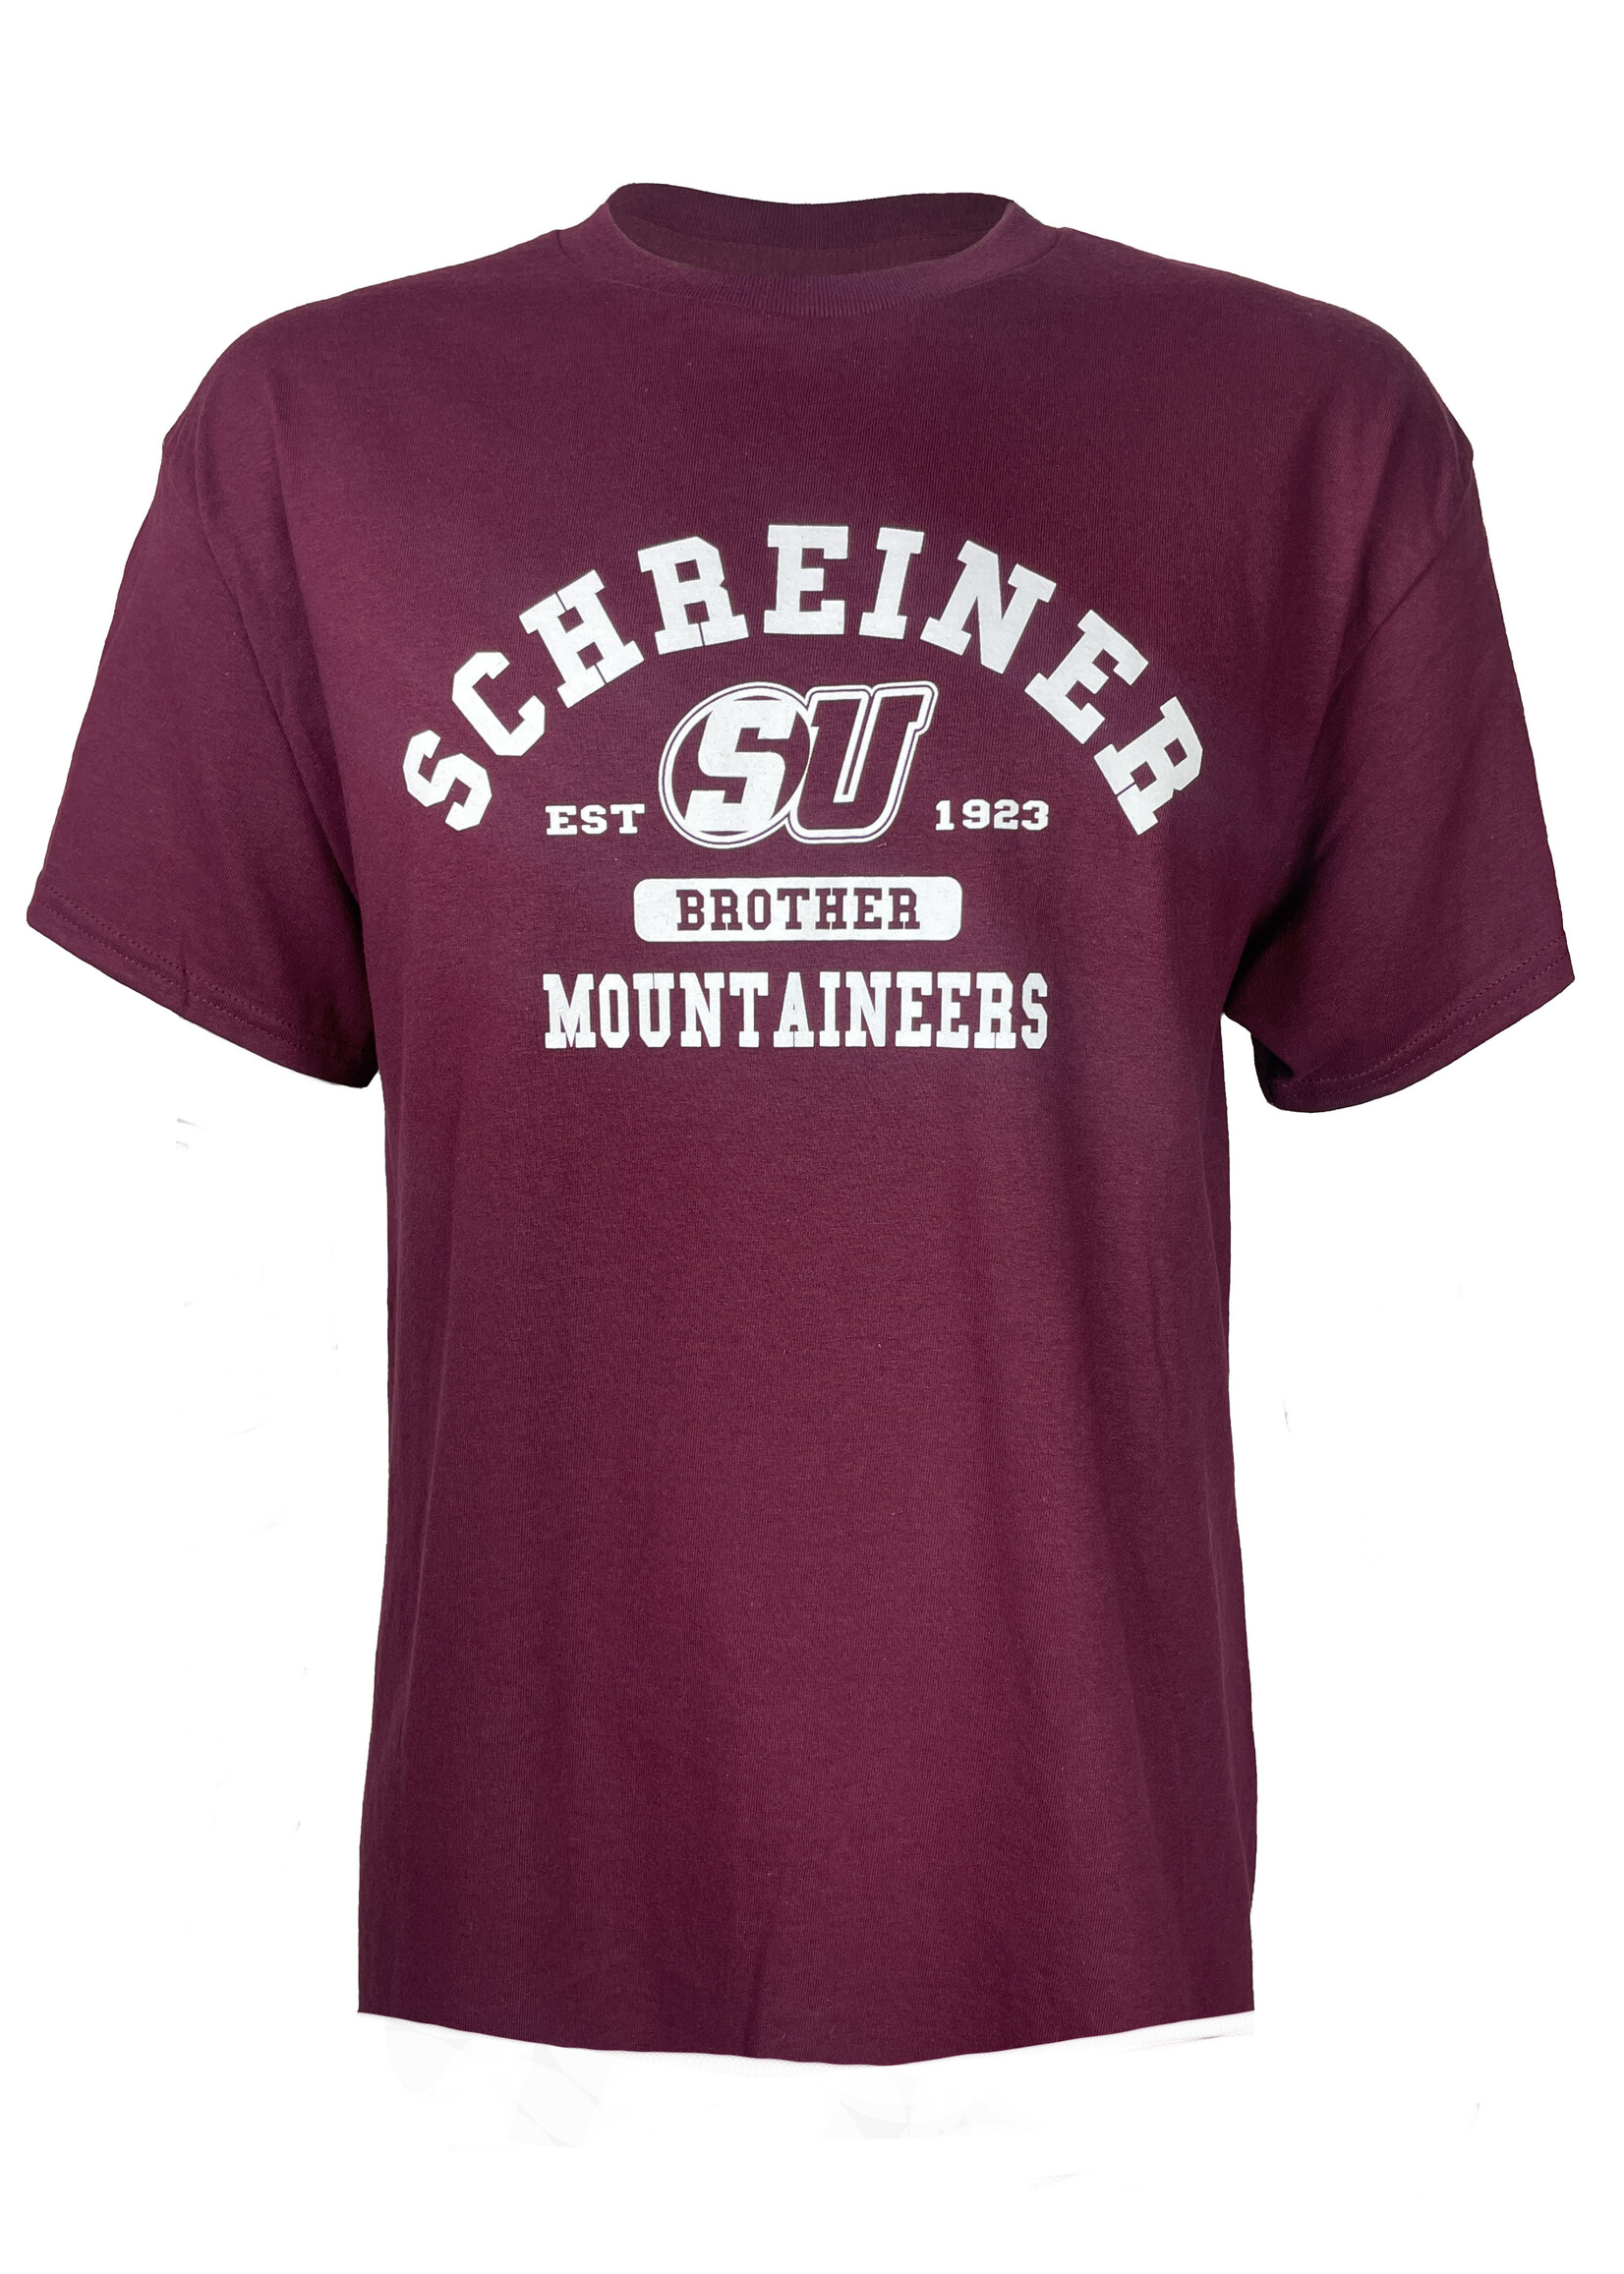 Kerr Screen Schreiner University Brother T-shirt